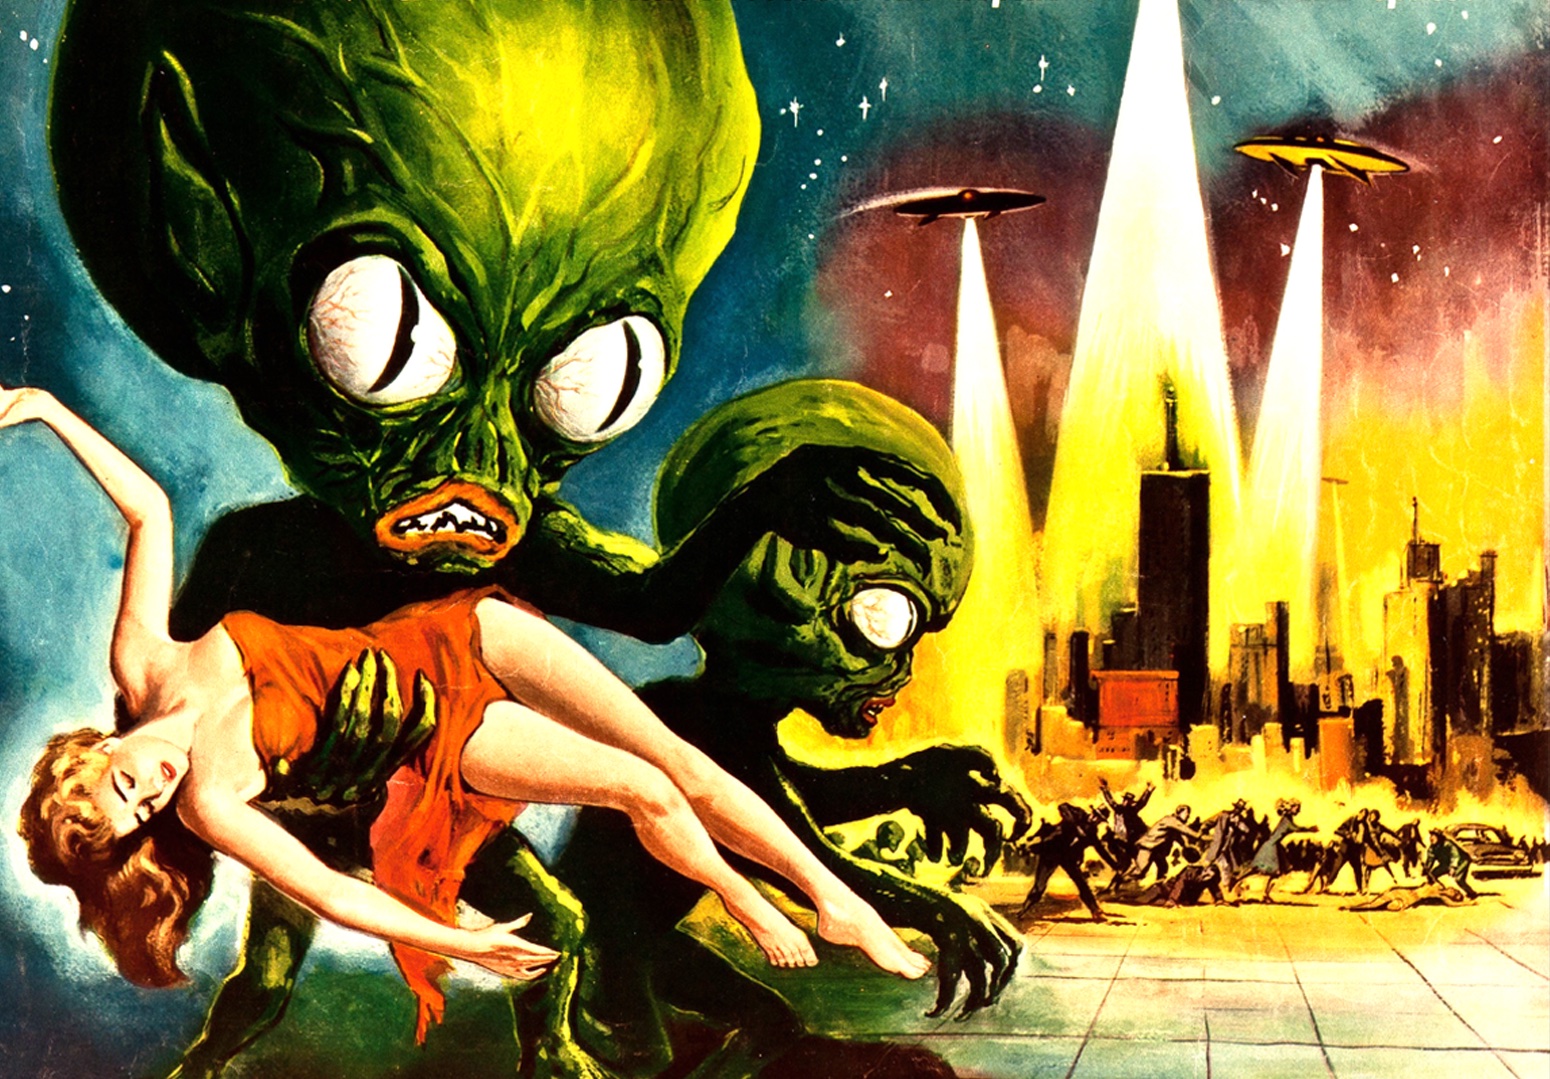 Invasion Of The Saucer Men (1957) starring Frank Gorshin